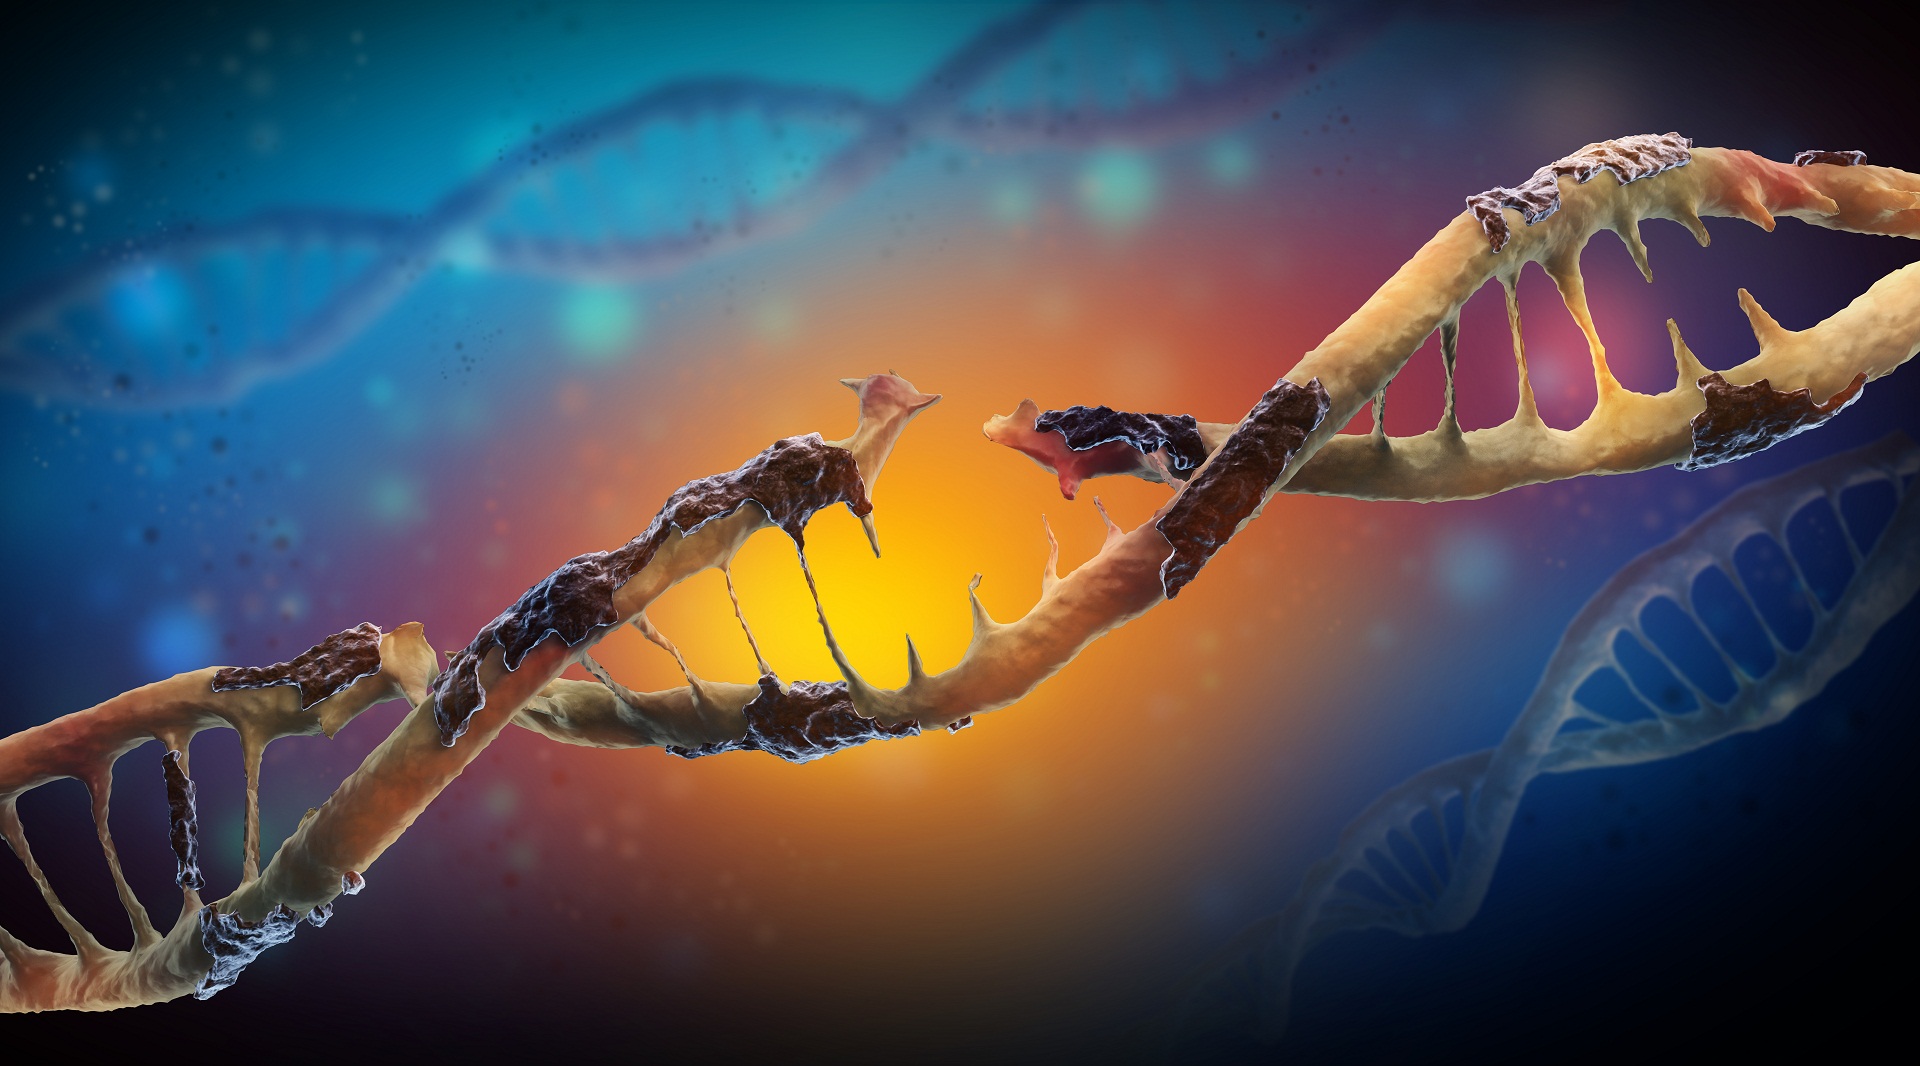 Mutação genética missense sentido trocado deleção inserção frameshift expansão de tripletos mutações genéticas sequenciamento completo do exoma genoma